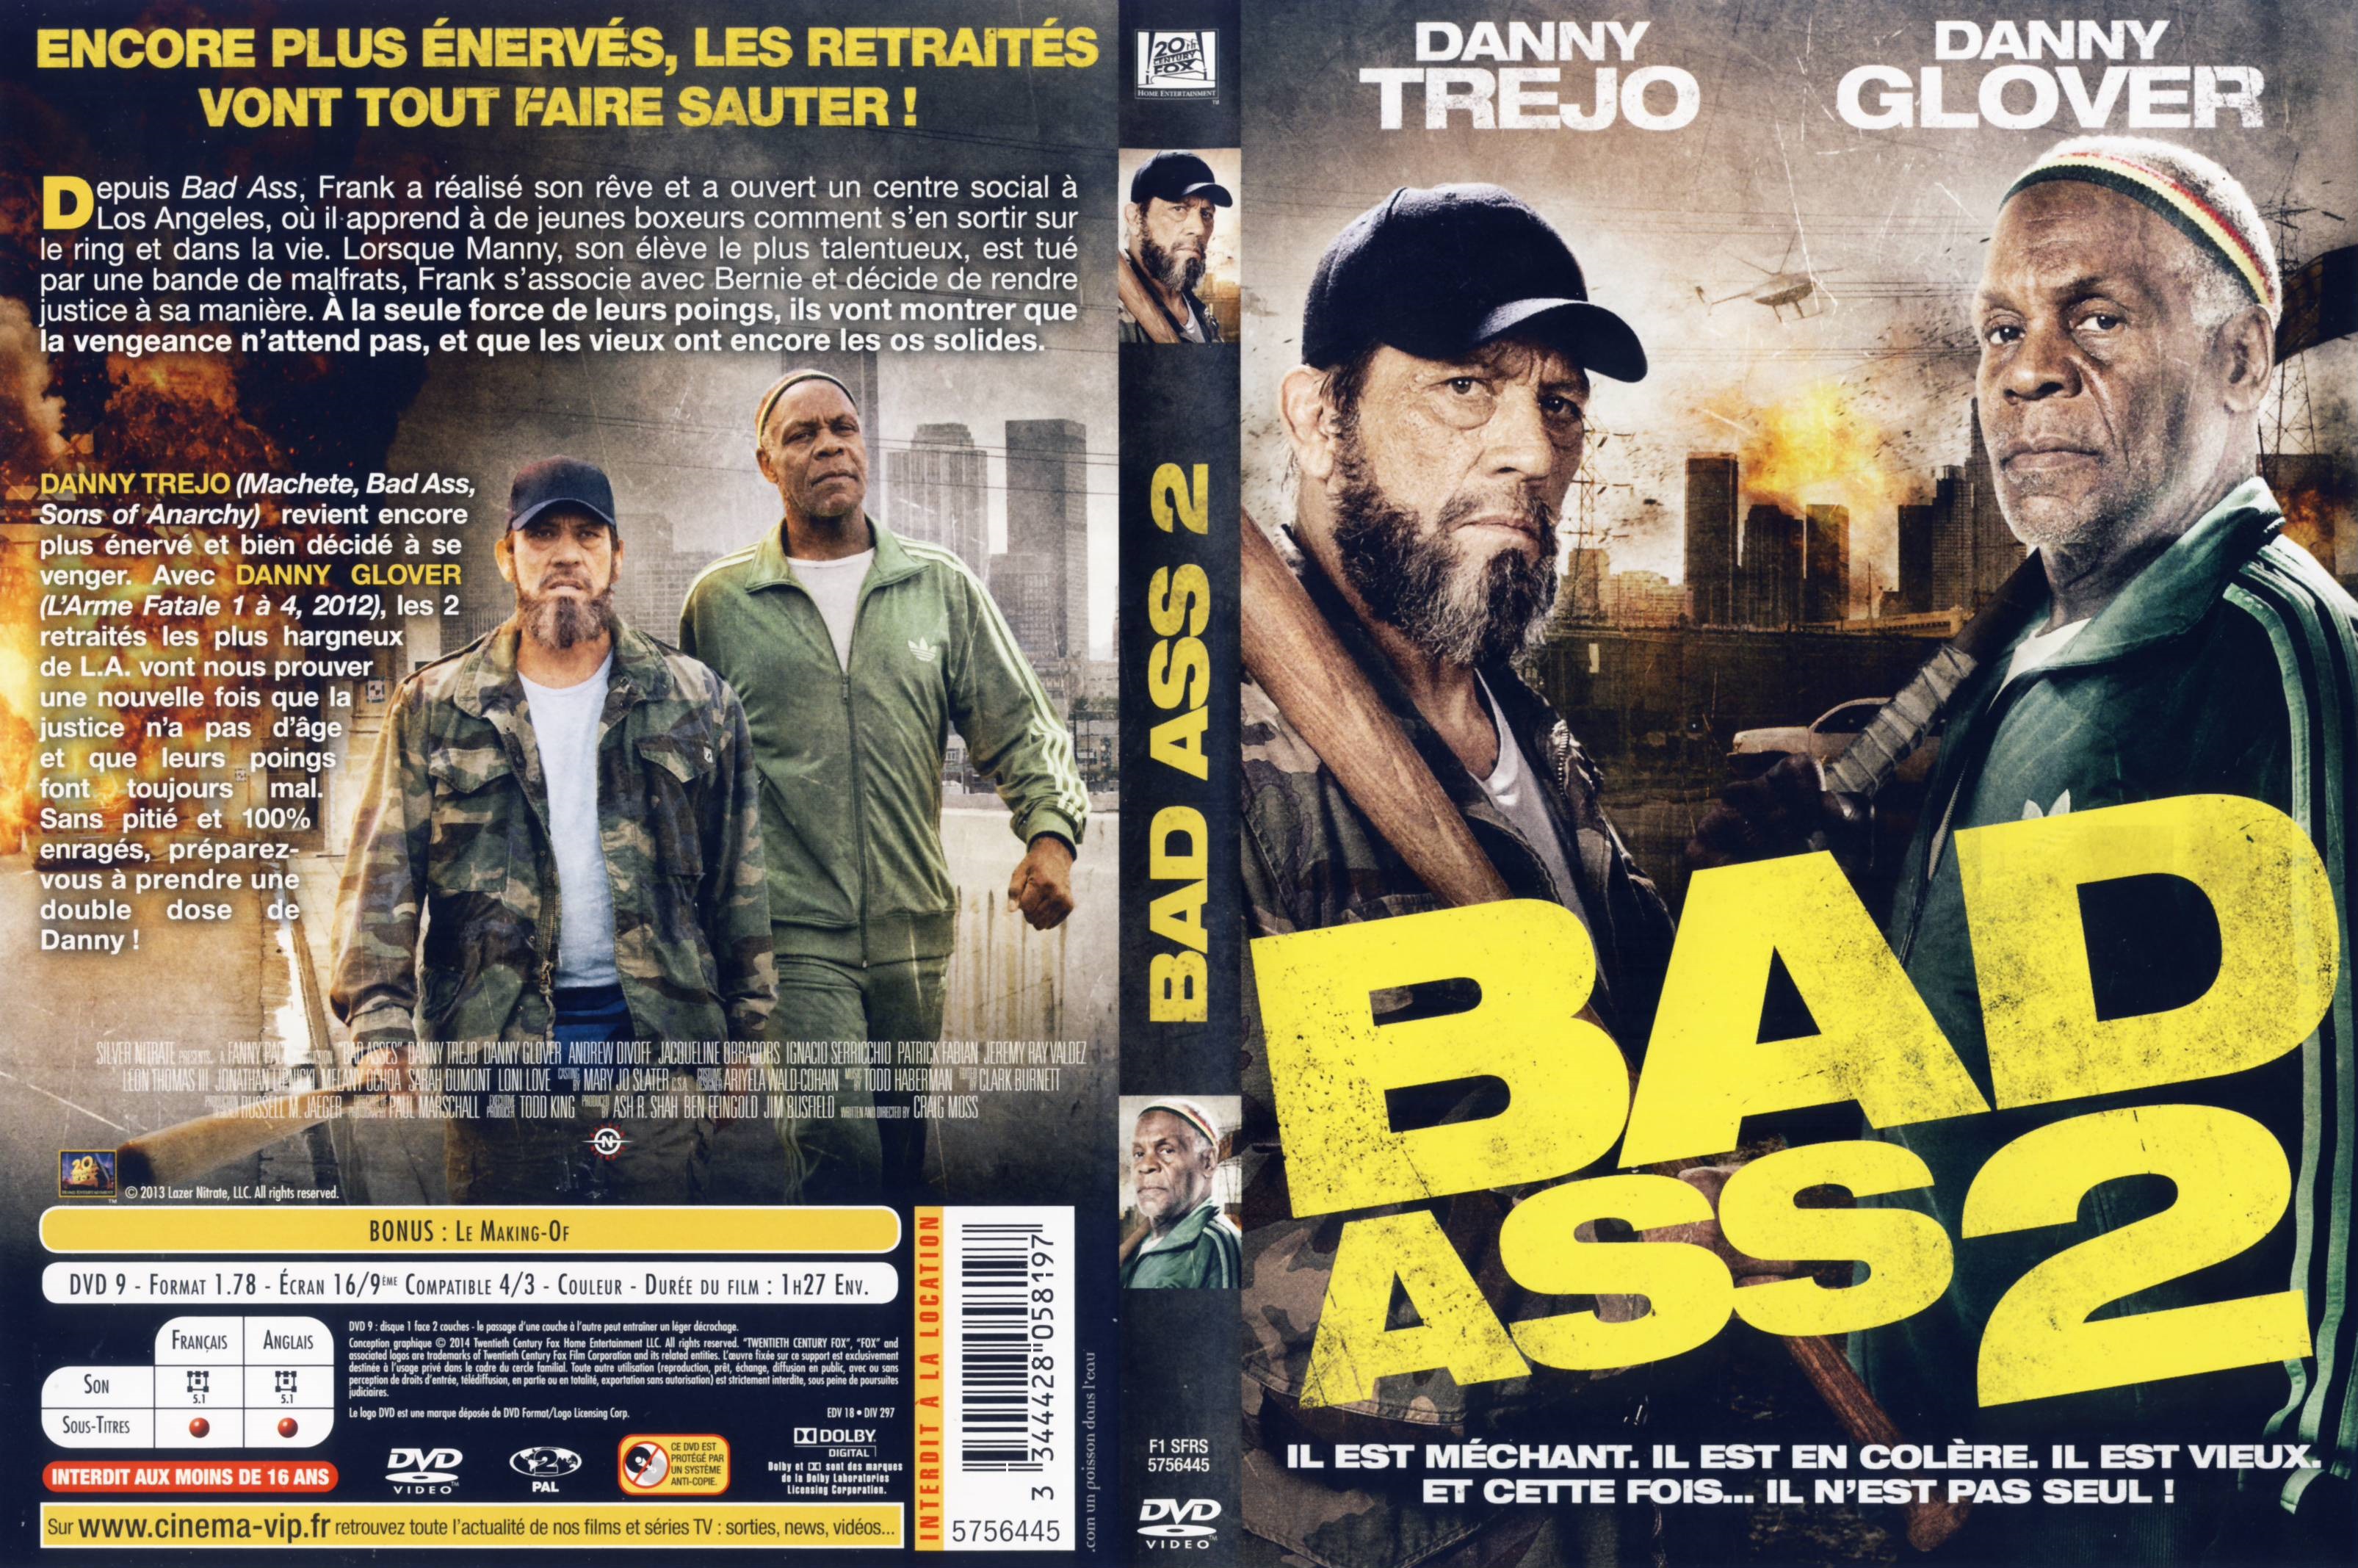 Jaquette Dvd De Bad Ass 2 Cinéma Passion